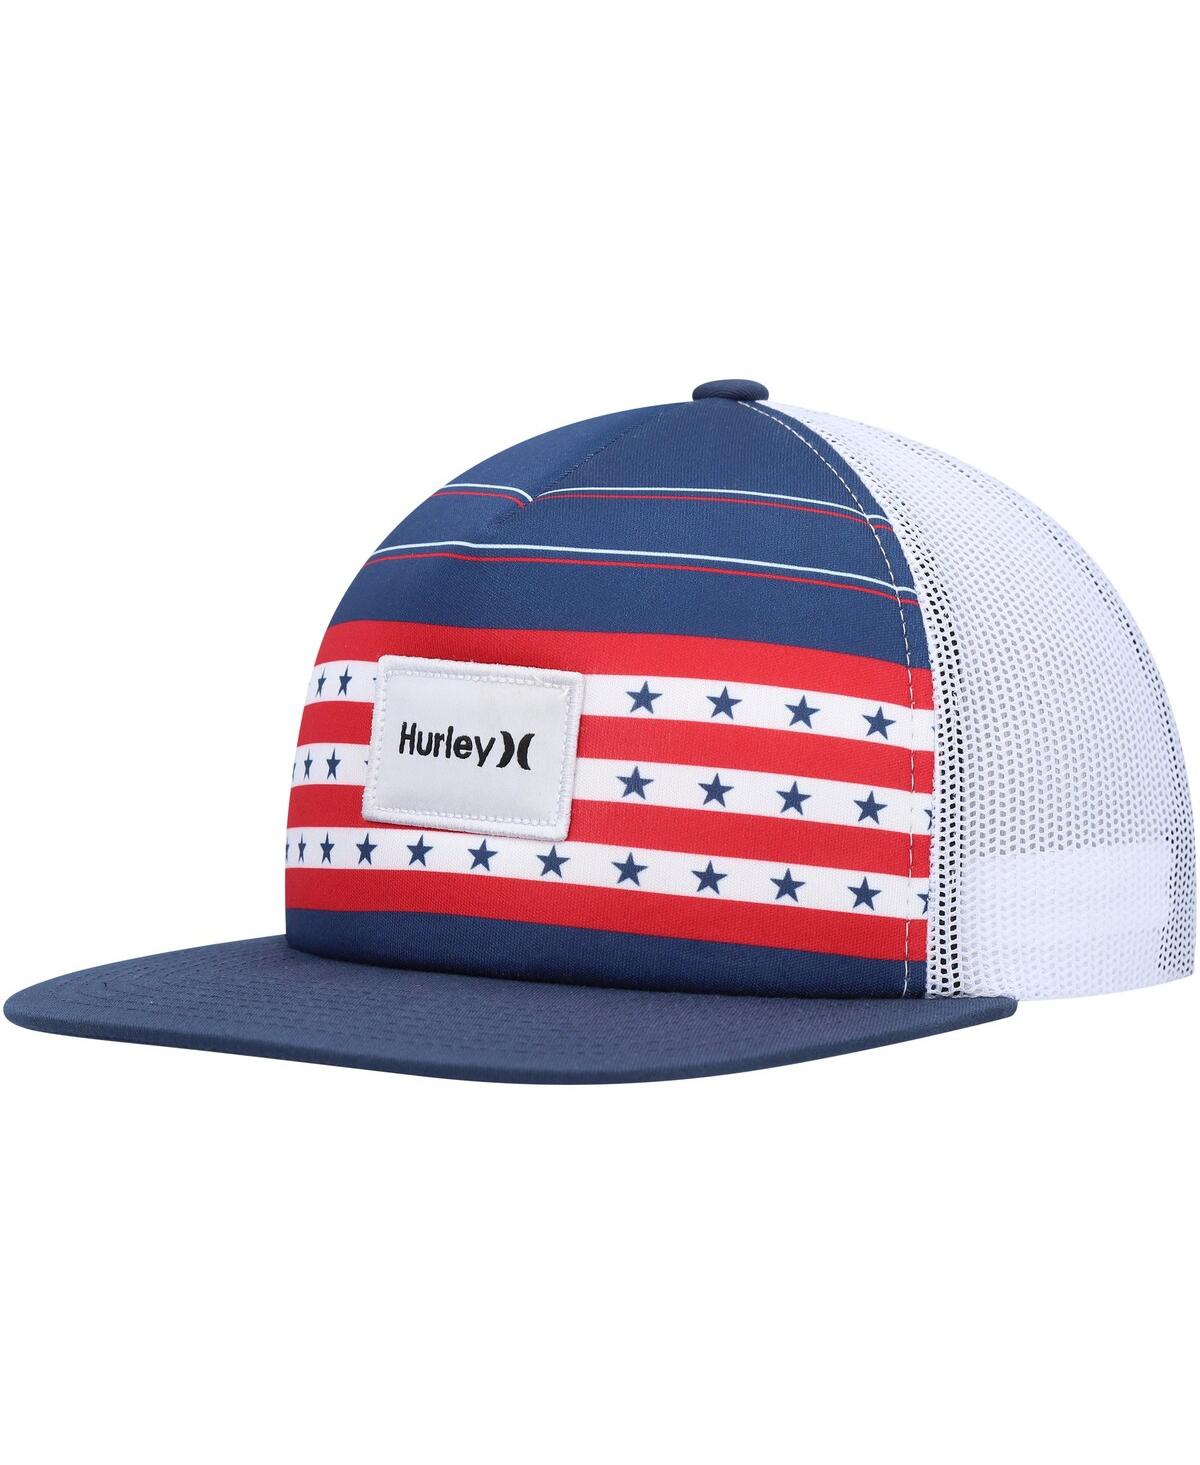 Men's Hurley Navy United Trucker Snapback Hat - Navy